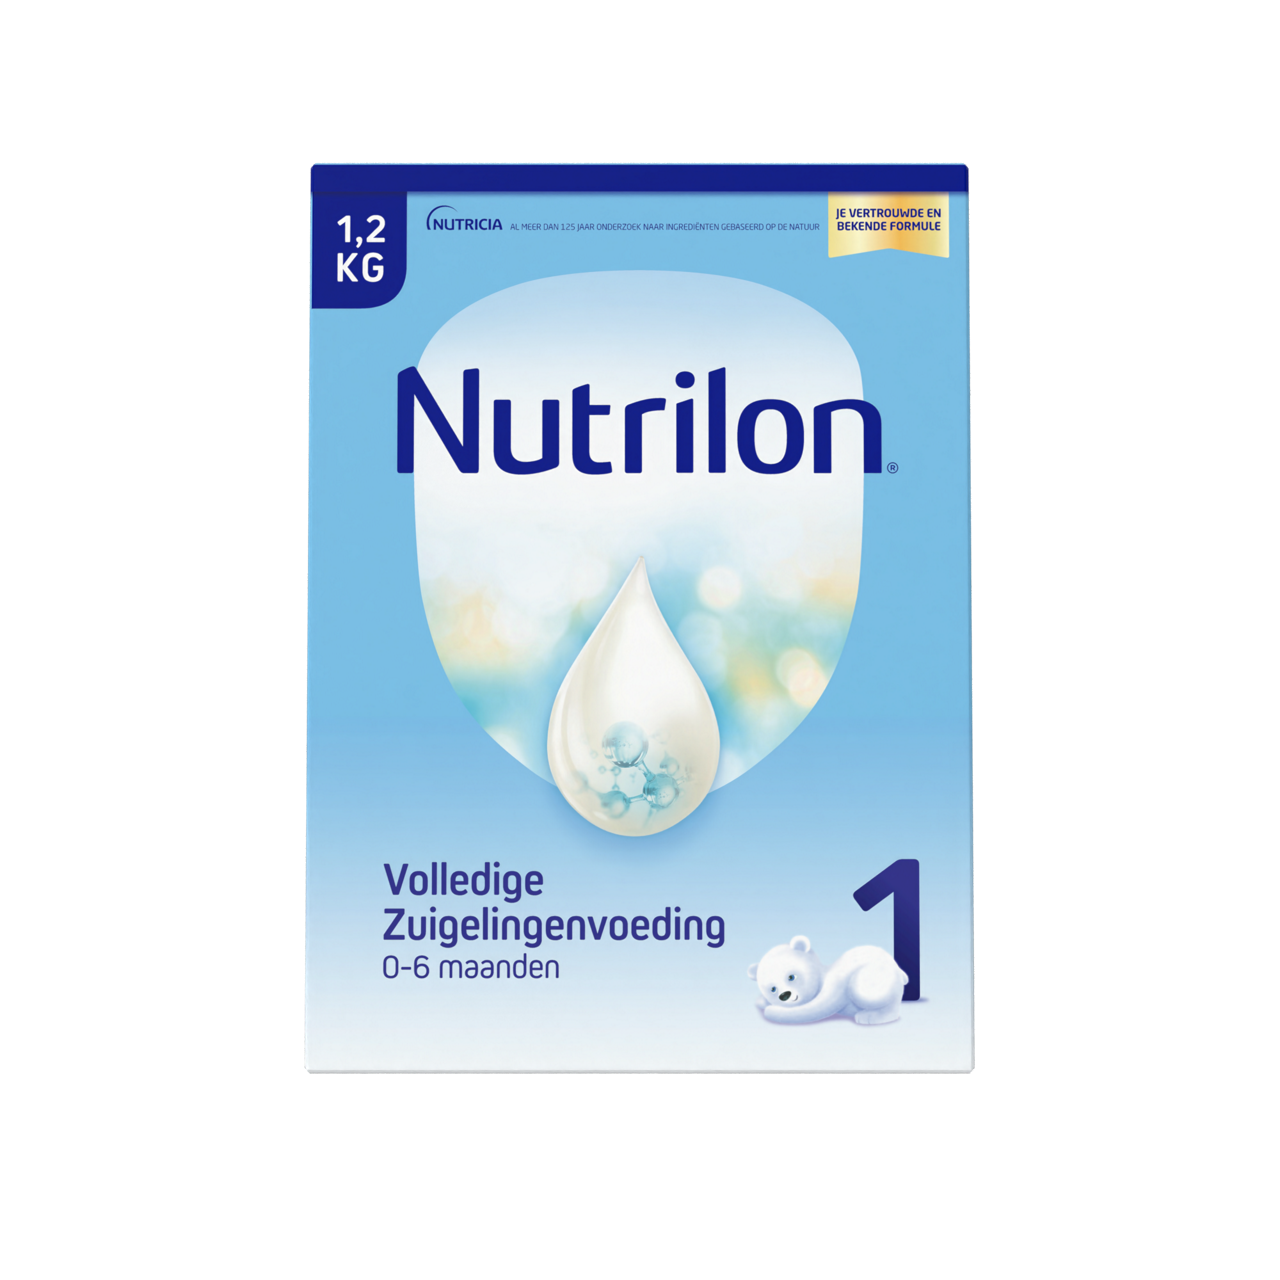 Nutrilon Vol. Zuigelingenvoeding 1 1.2KG